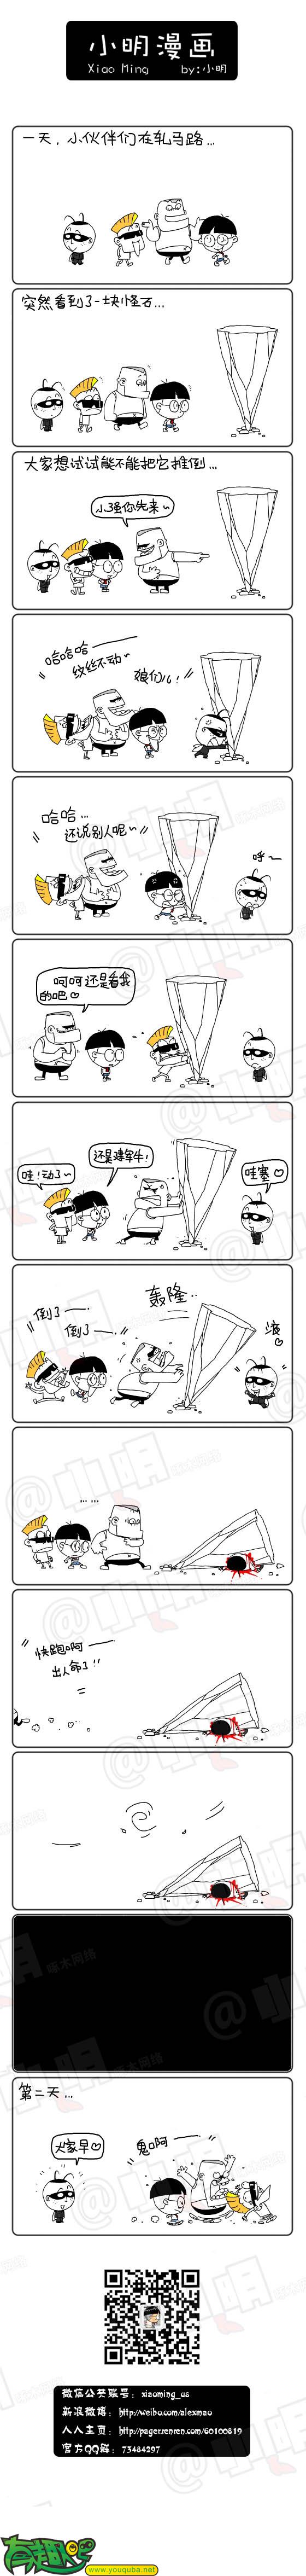 小明系列漫画:推动